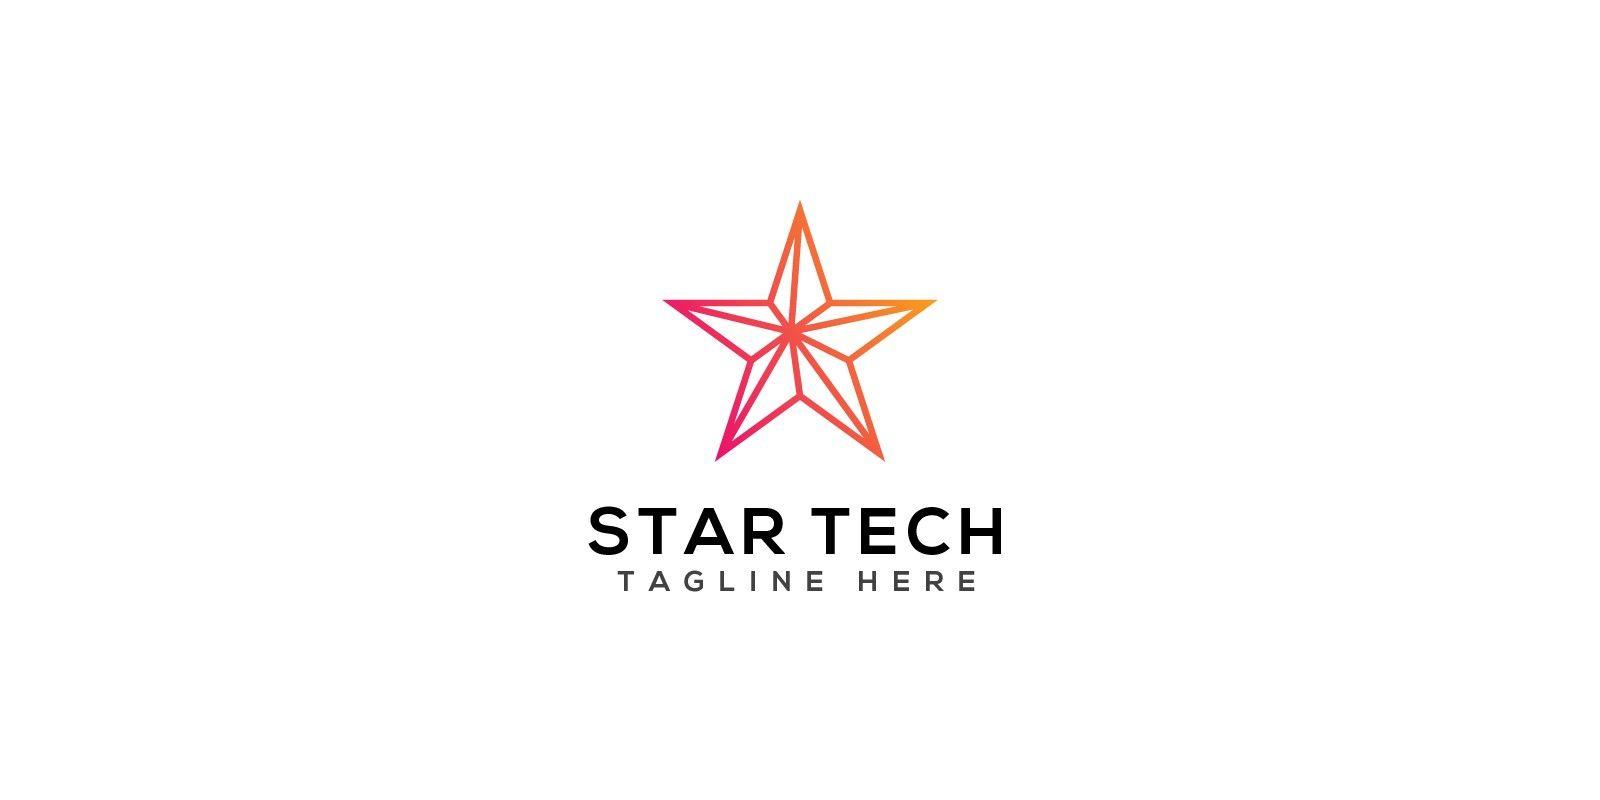 StarTech Logo - Star Tech Logo